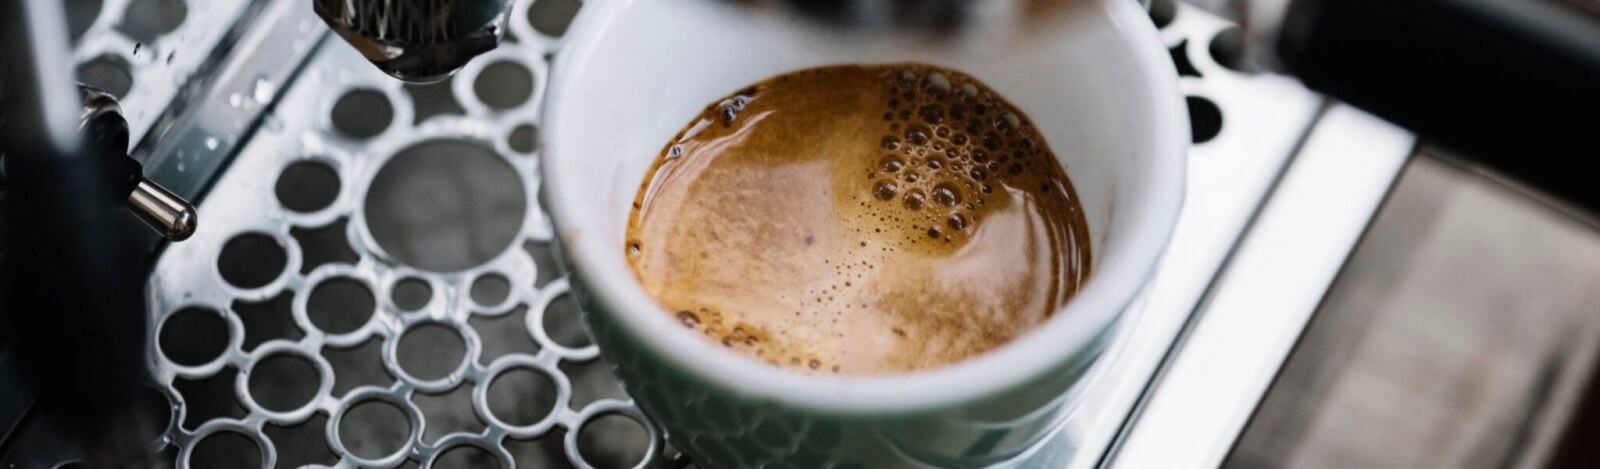 A száraz feldolgozású kávé a legjobb választás eszpresszóhoz?